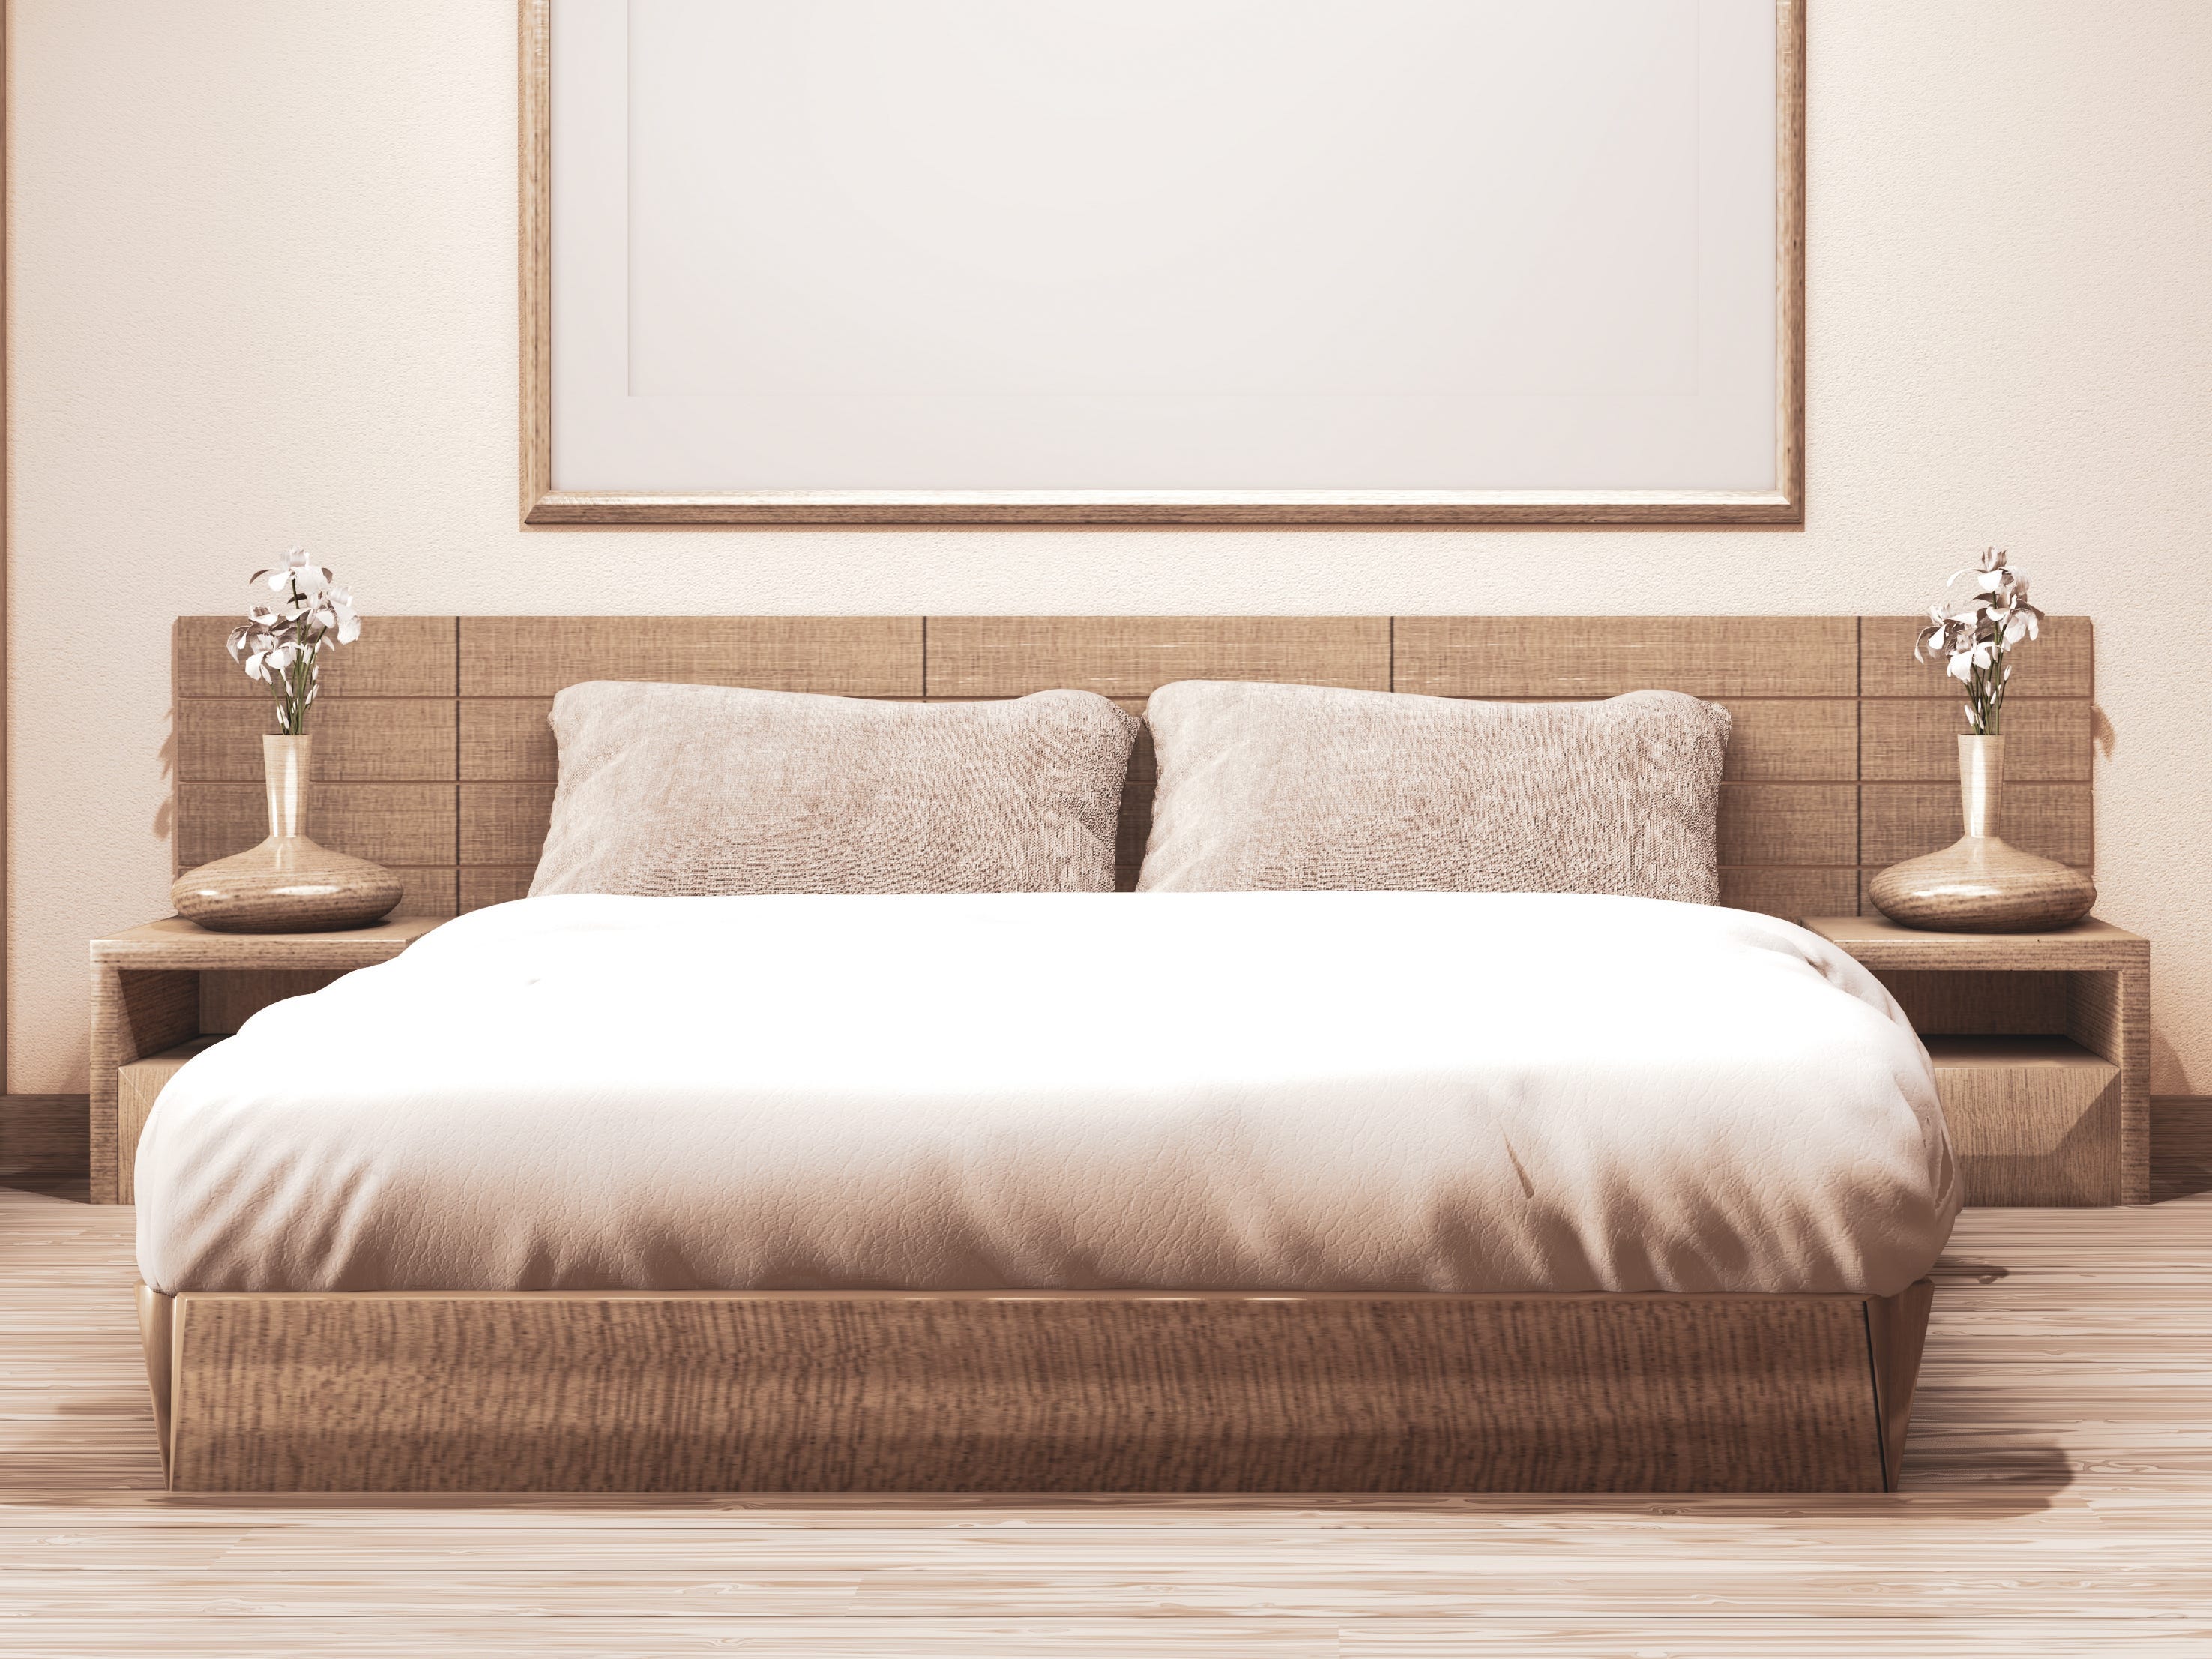 Ein bodentiefes Bett mit braunen Akzenten.  Über dem Bett befindet sich ein leerer Rahmen mit dünnen braunen Kanten.